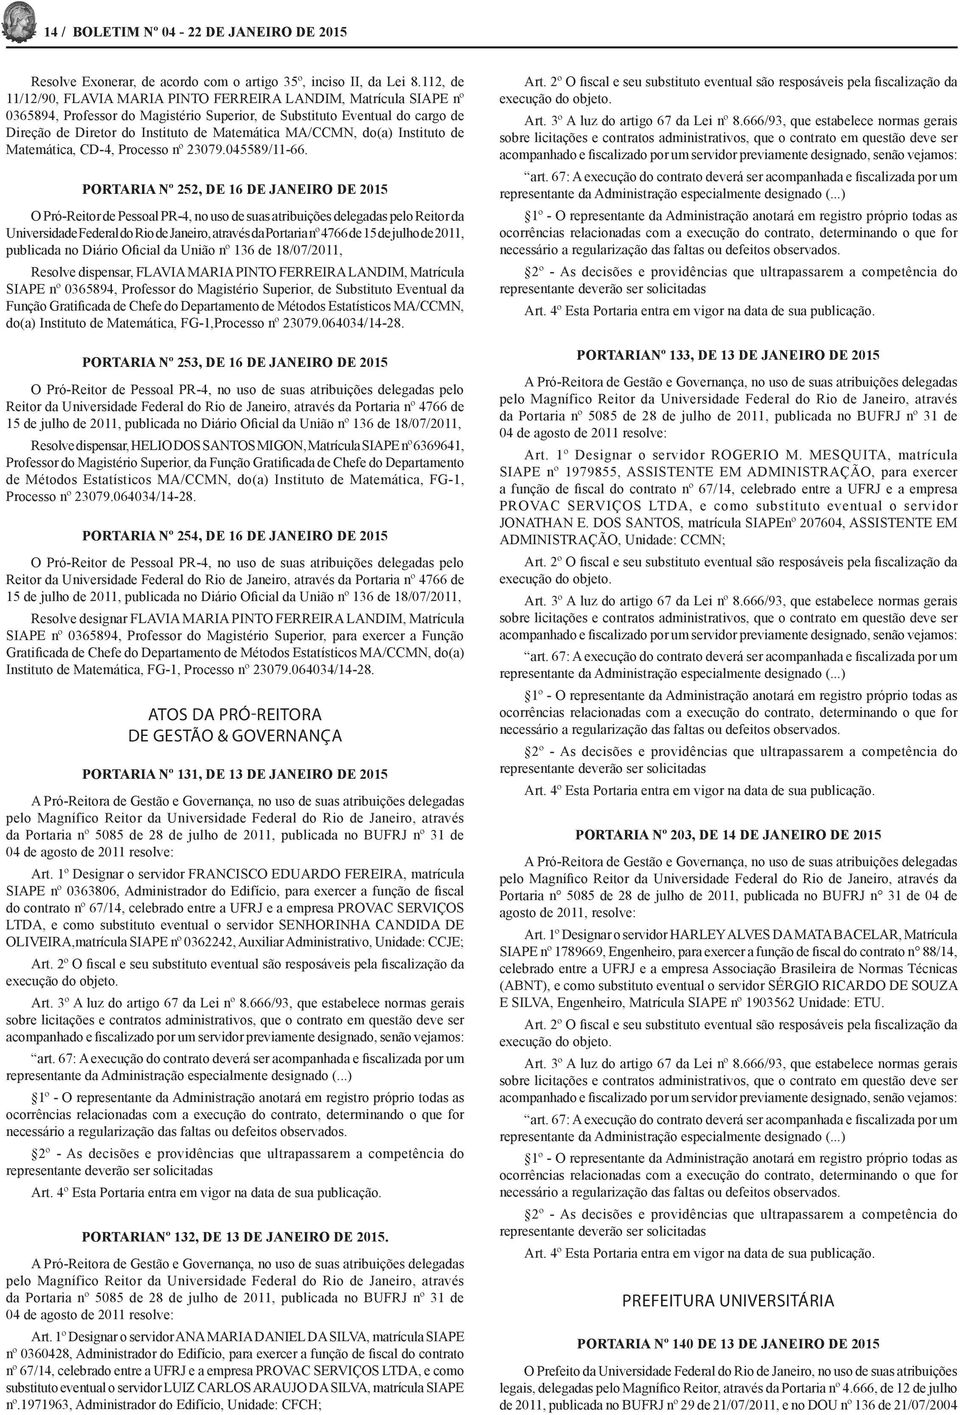 MA/CCMN, do(a) Instituto de Matemática, CD-4, Processo nº 23079.045589/11-66.